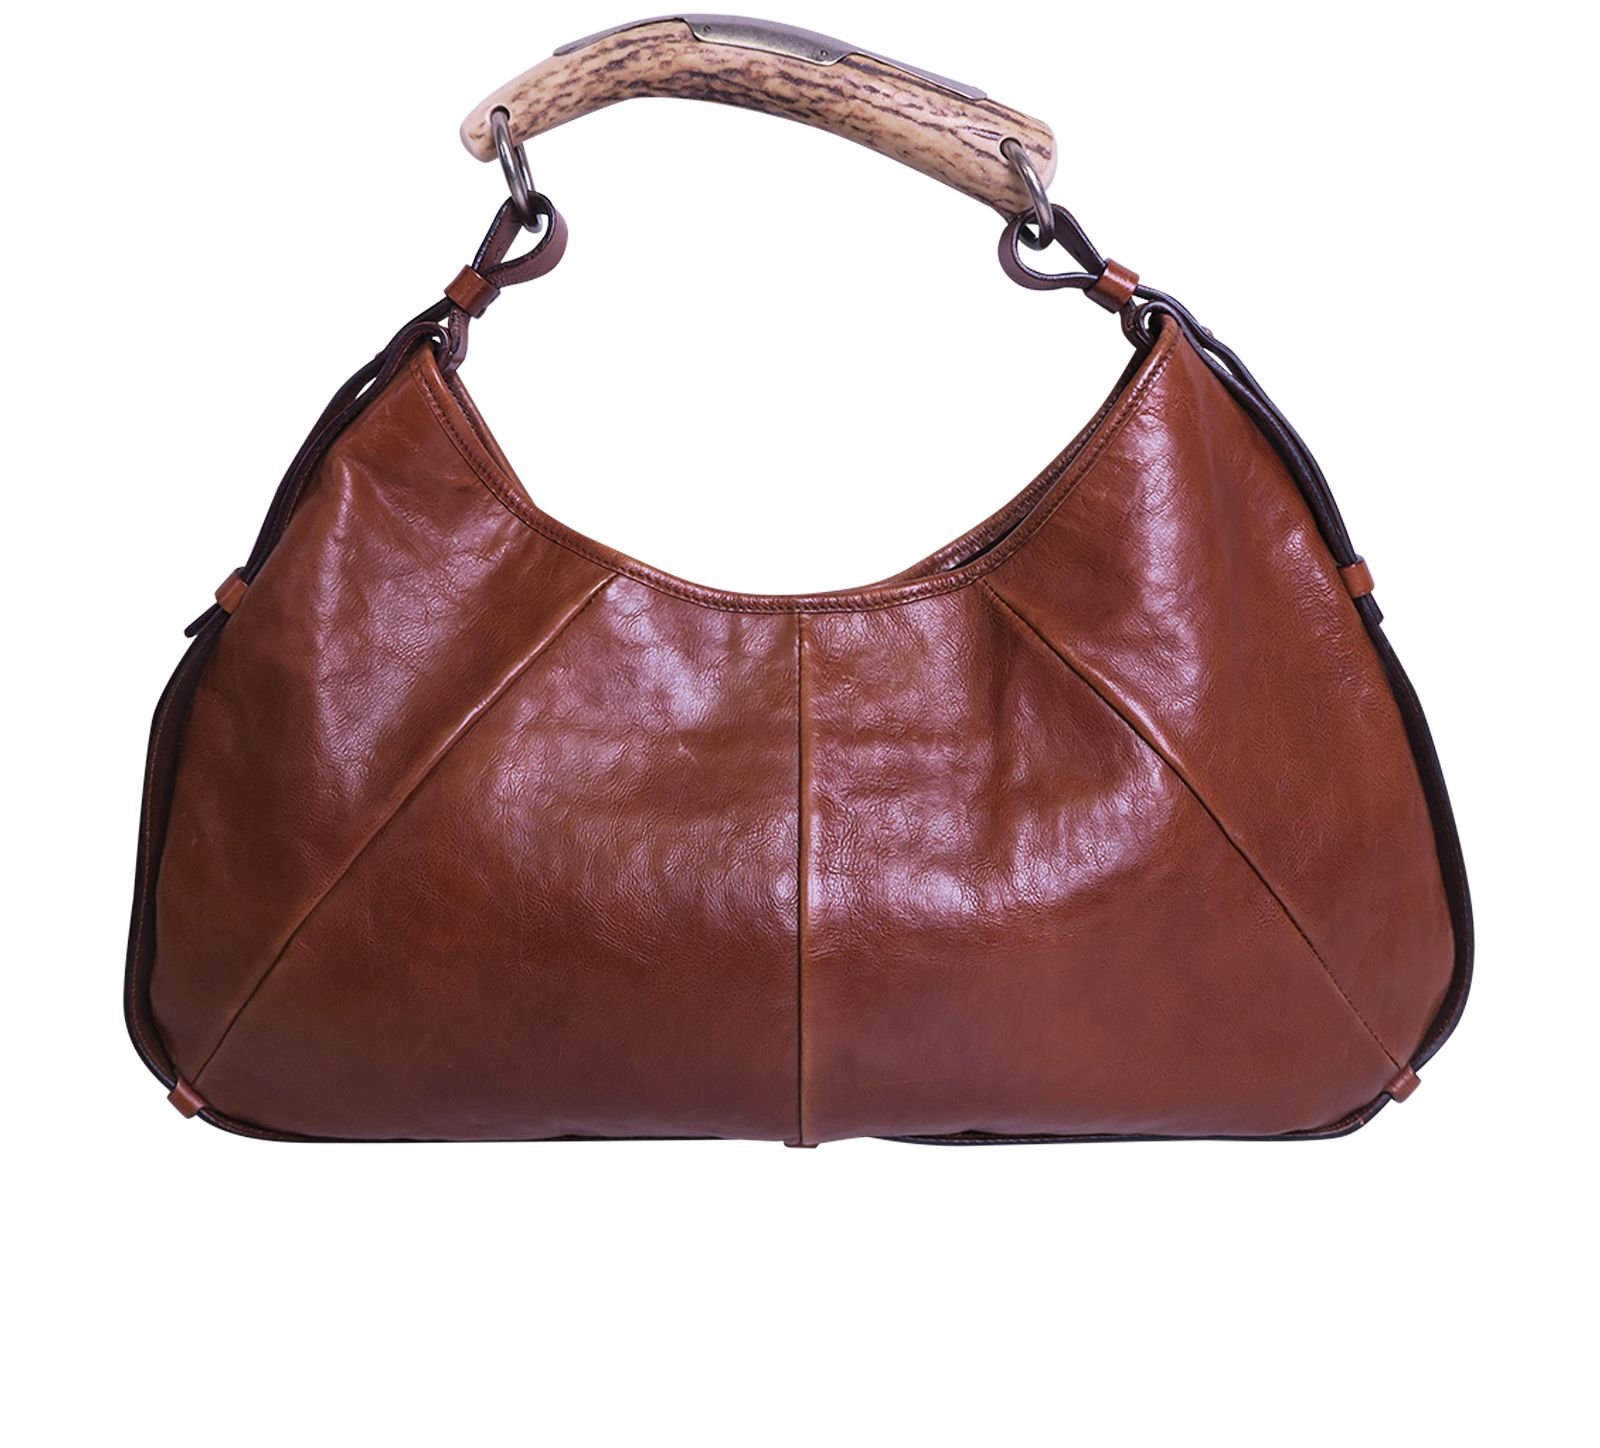 Tom Ford Mombasa Leather Handbag